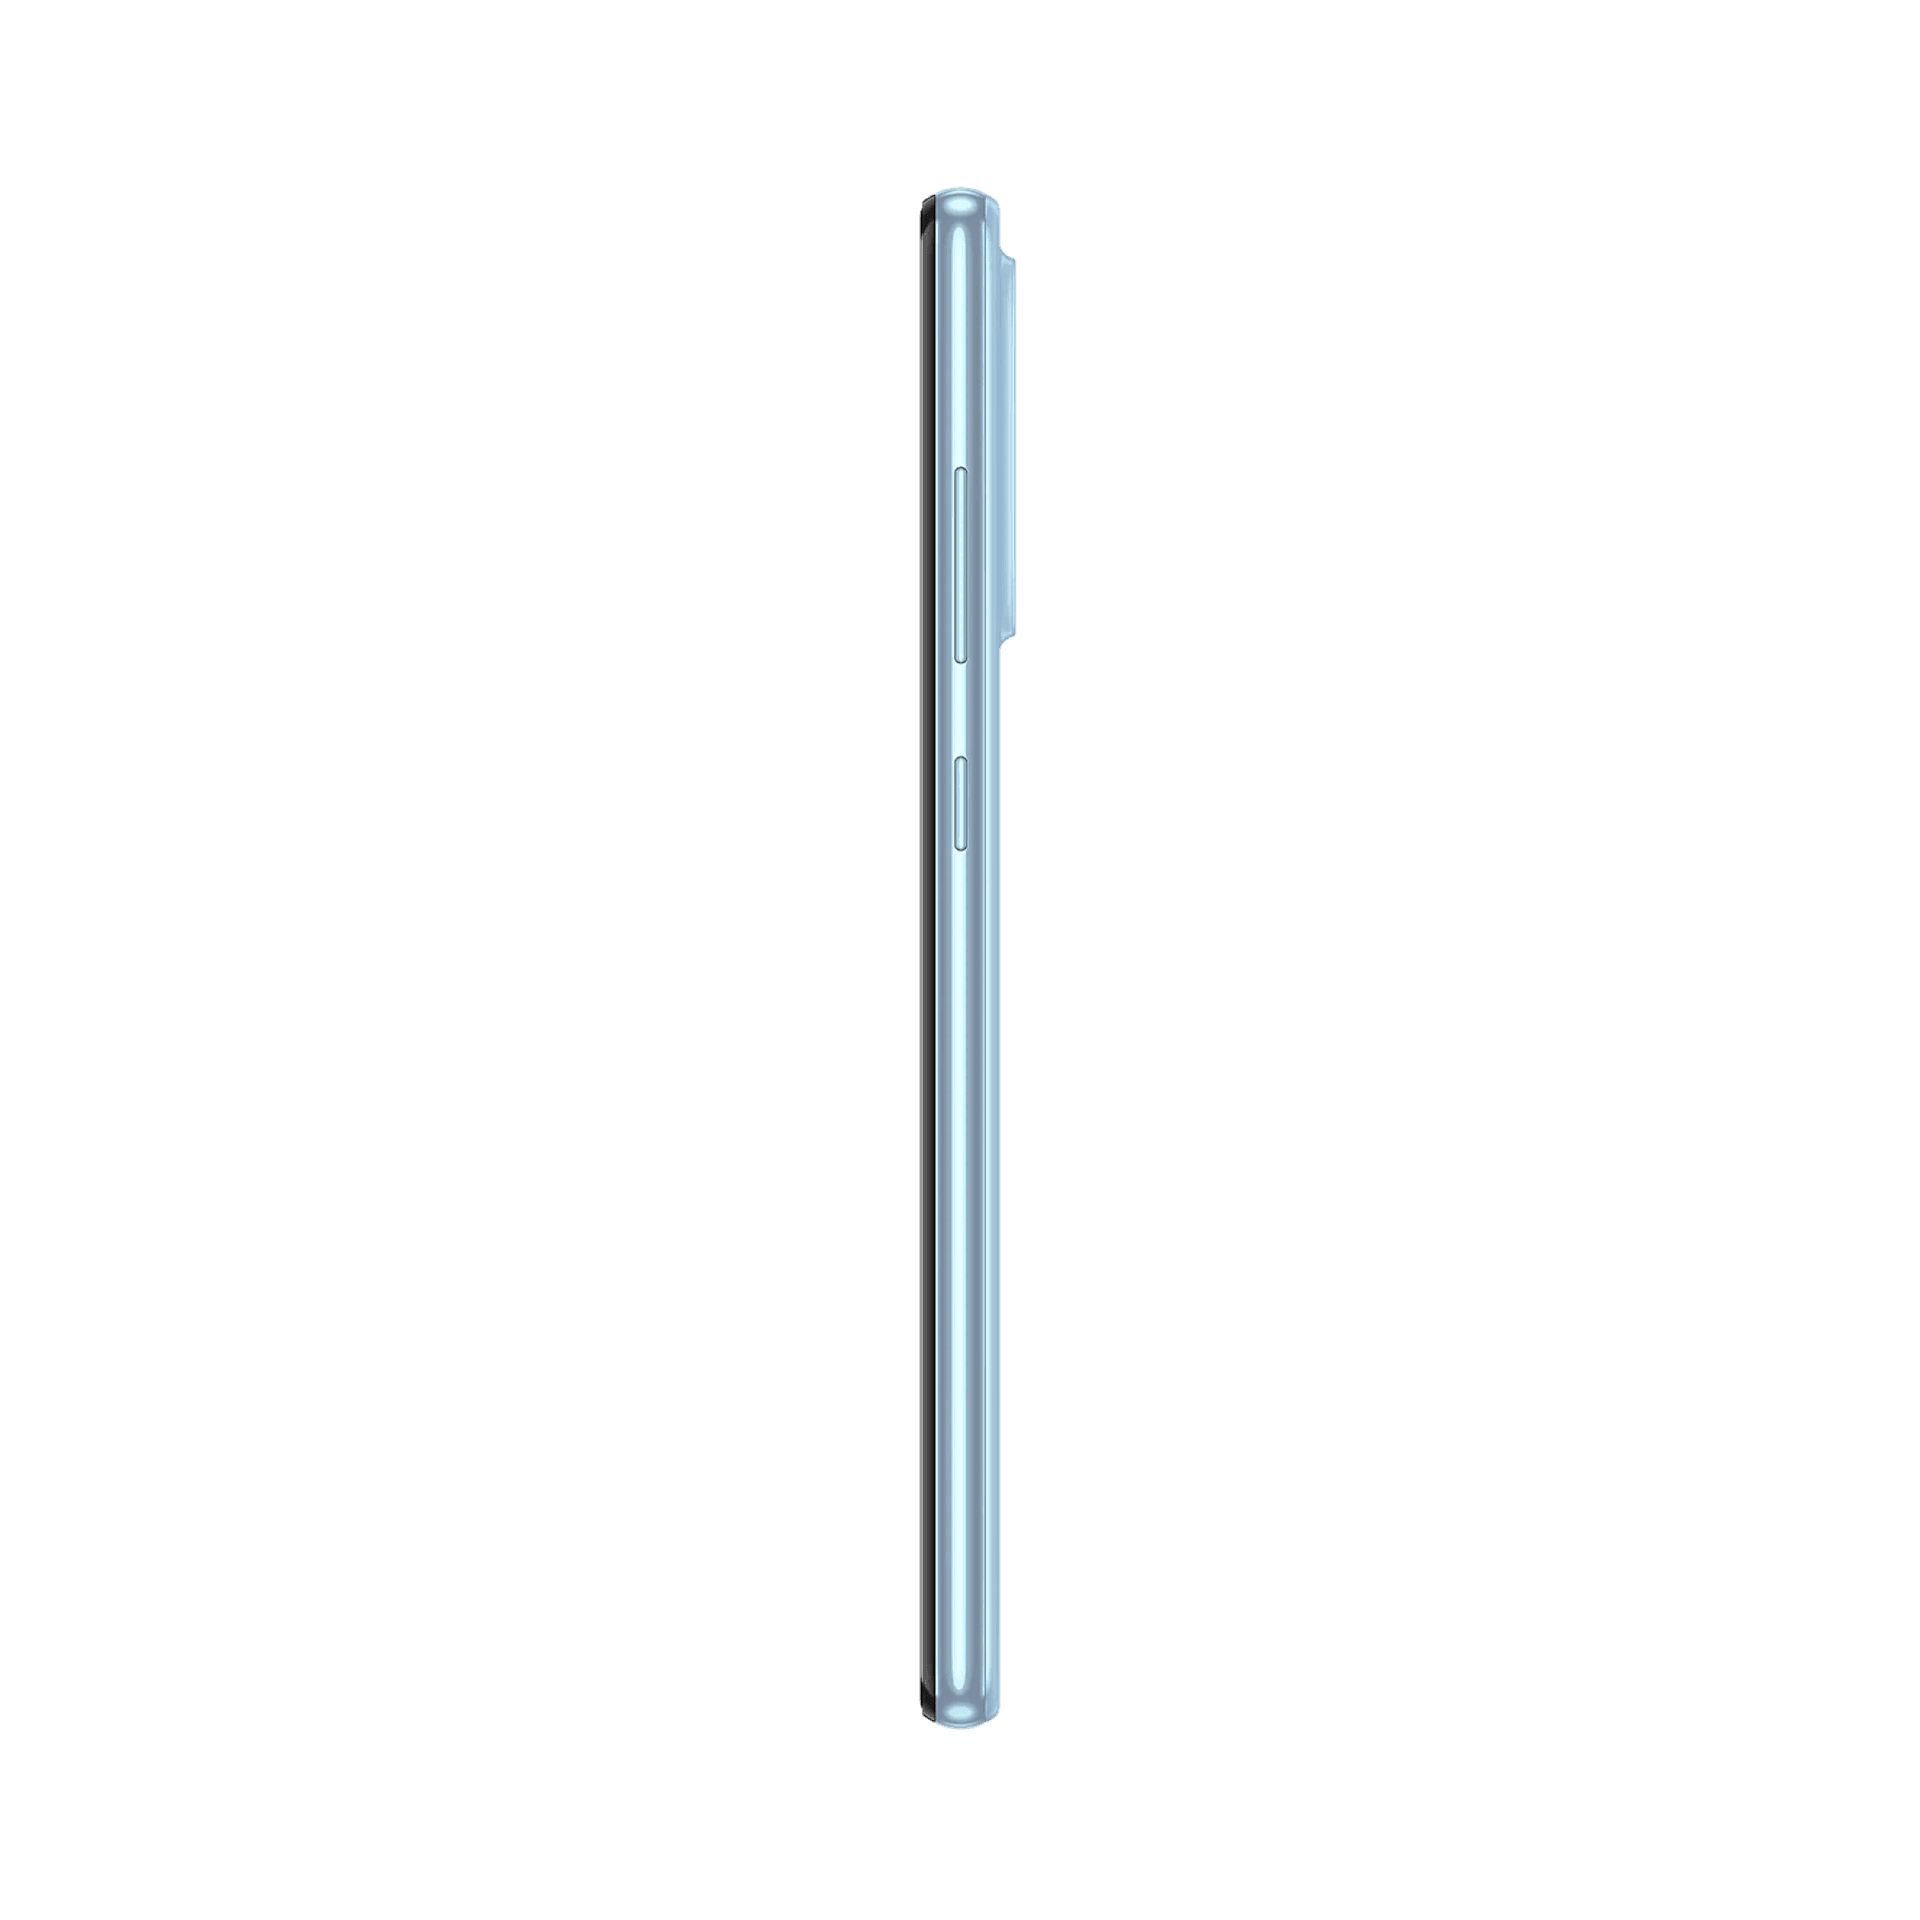 Samsung Galaxy A72 - 256 GB - Müthiş Mavi